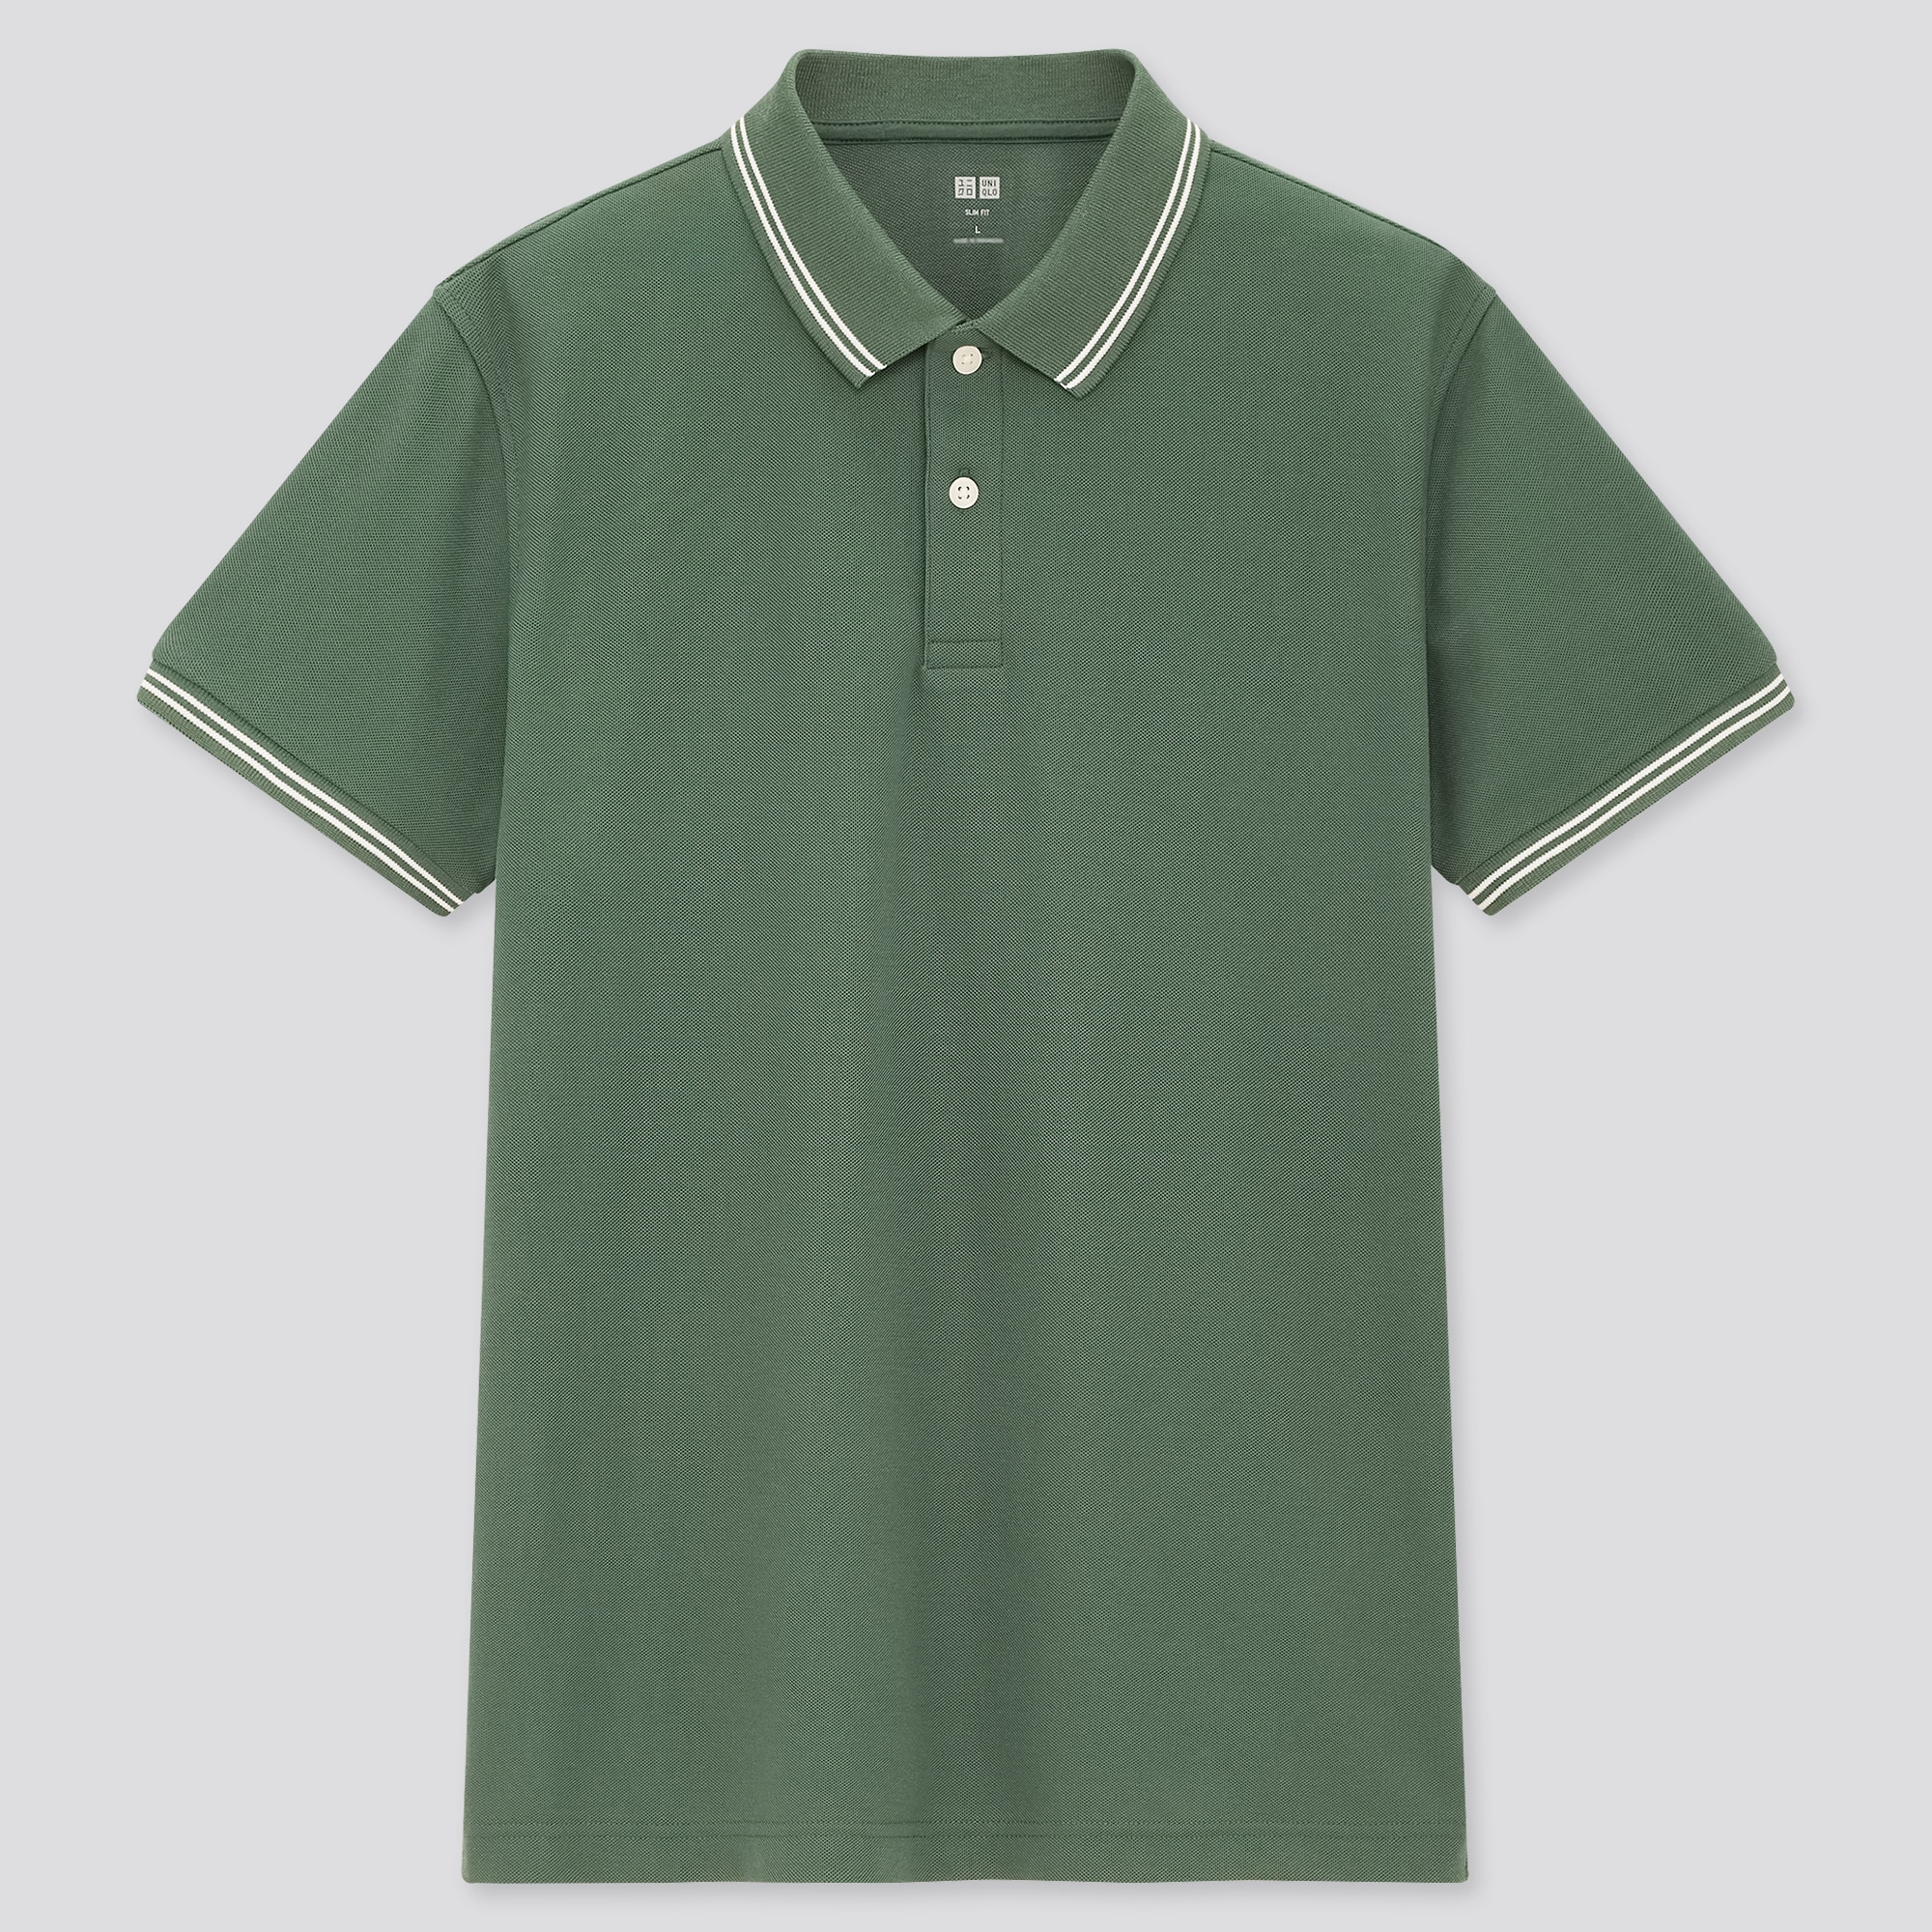 Uniqlo mens dry pique short sleeve polo shirt dark green Mens Fashion  Tops  Sets Tshirts  Polo Shirts on Carousell